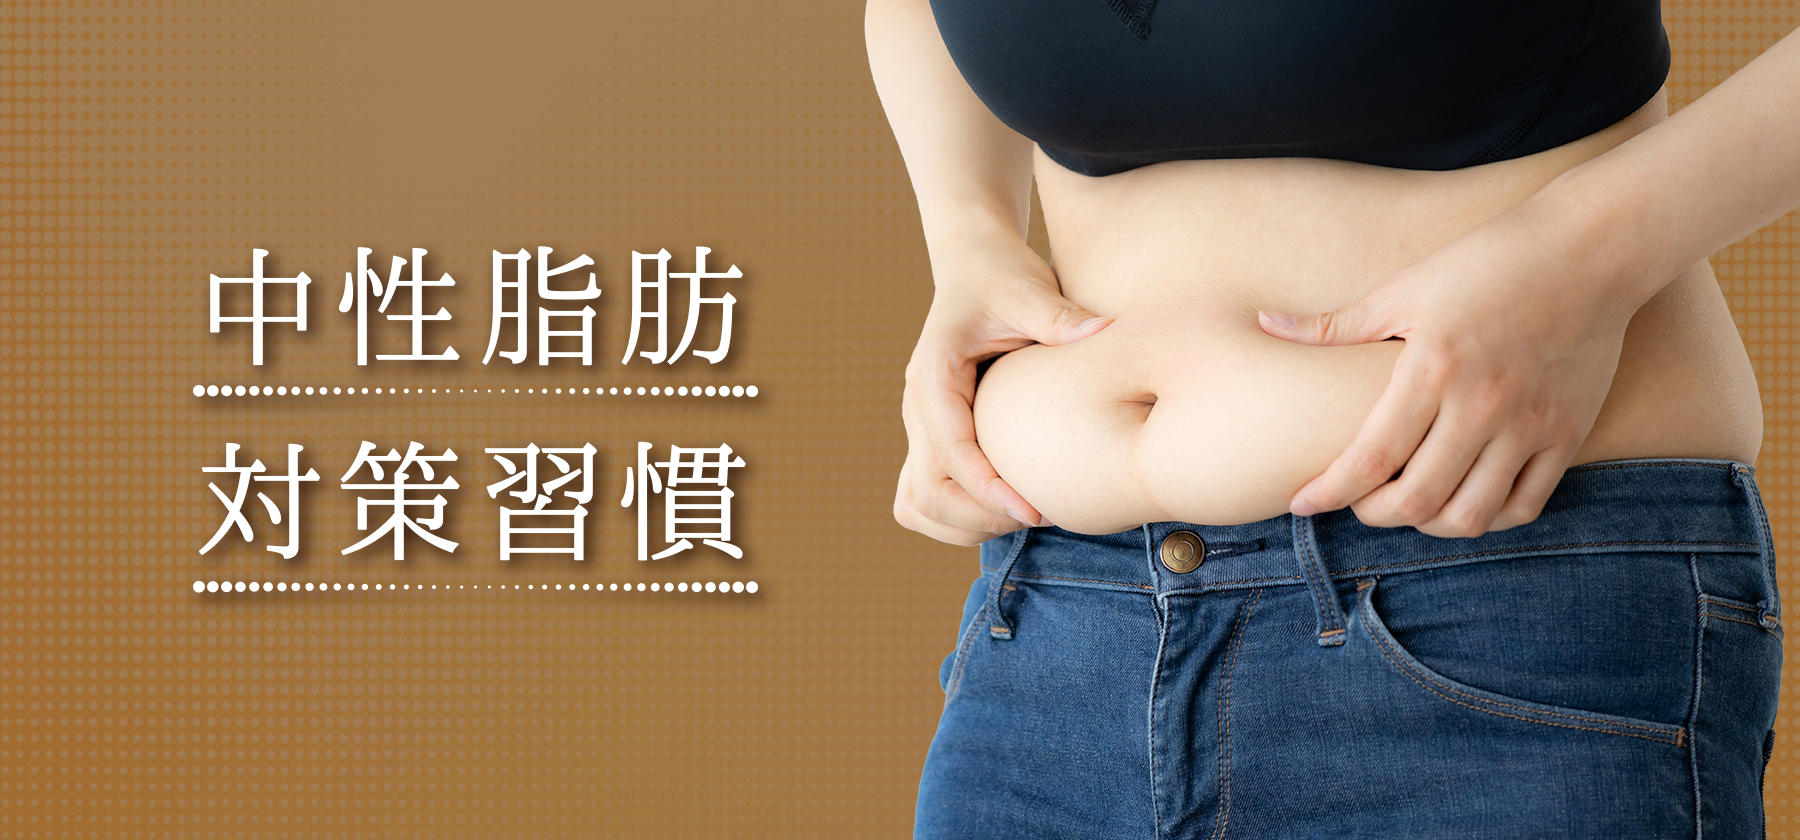 中性脂肪対策習慣